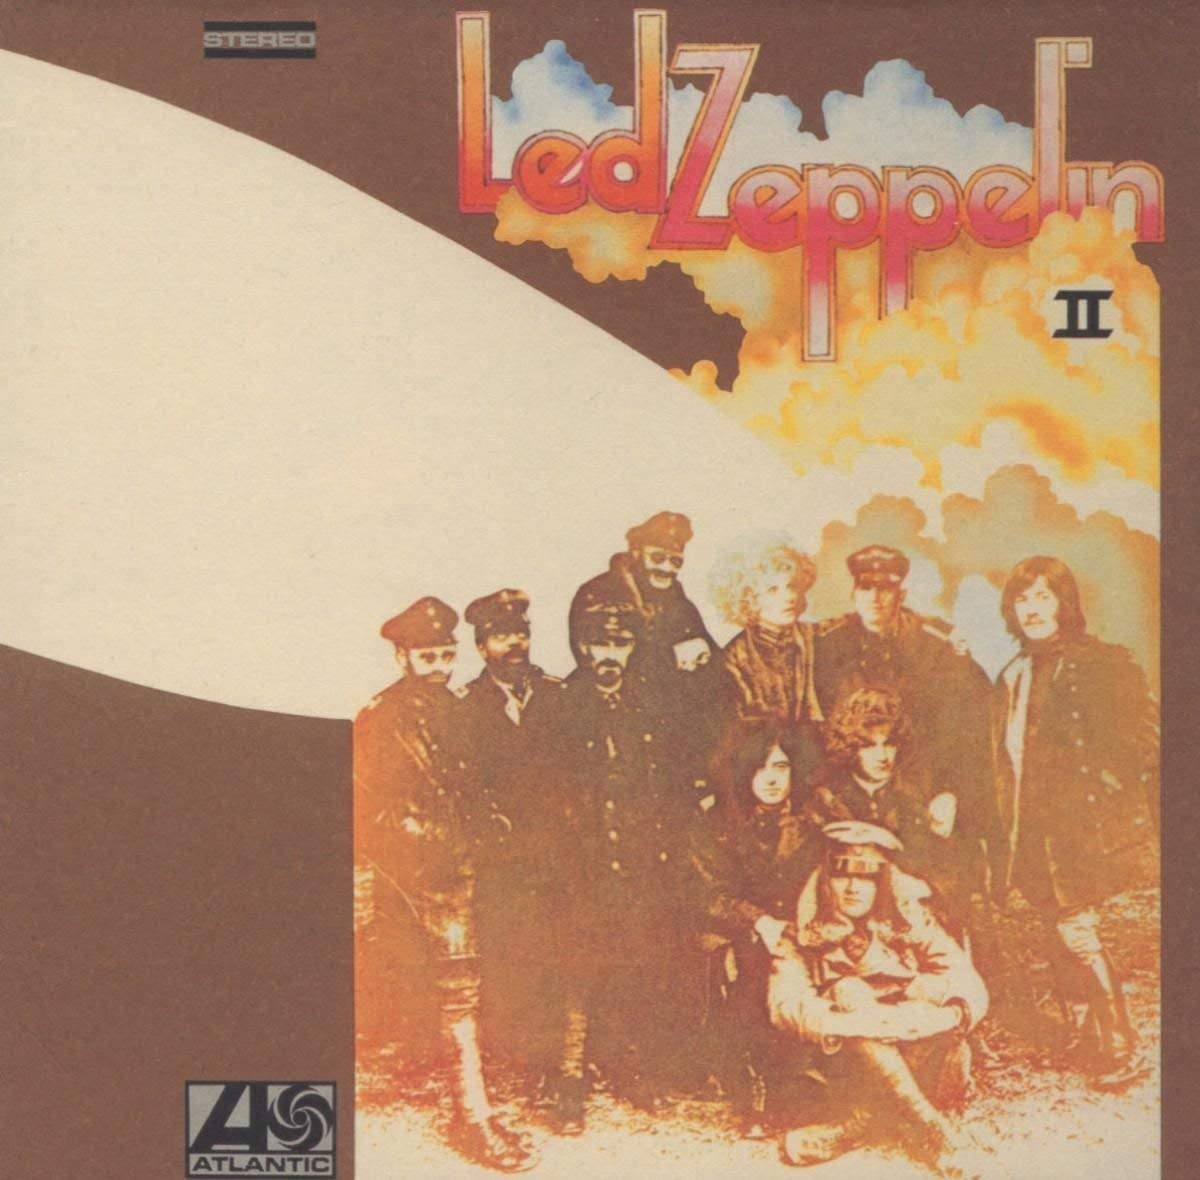 Led Zeppelin "II" LP